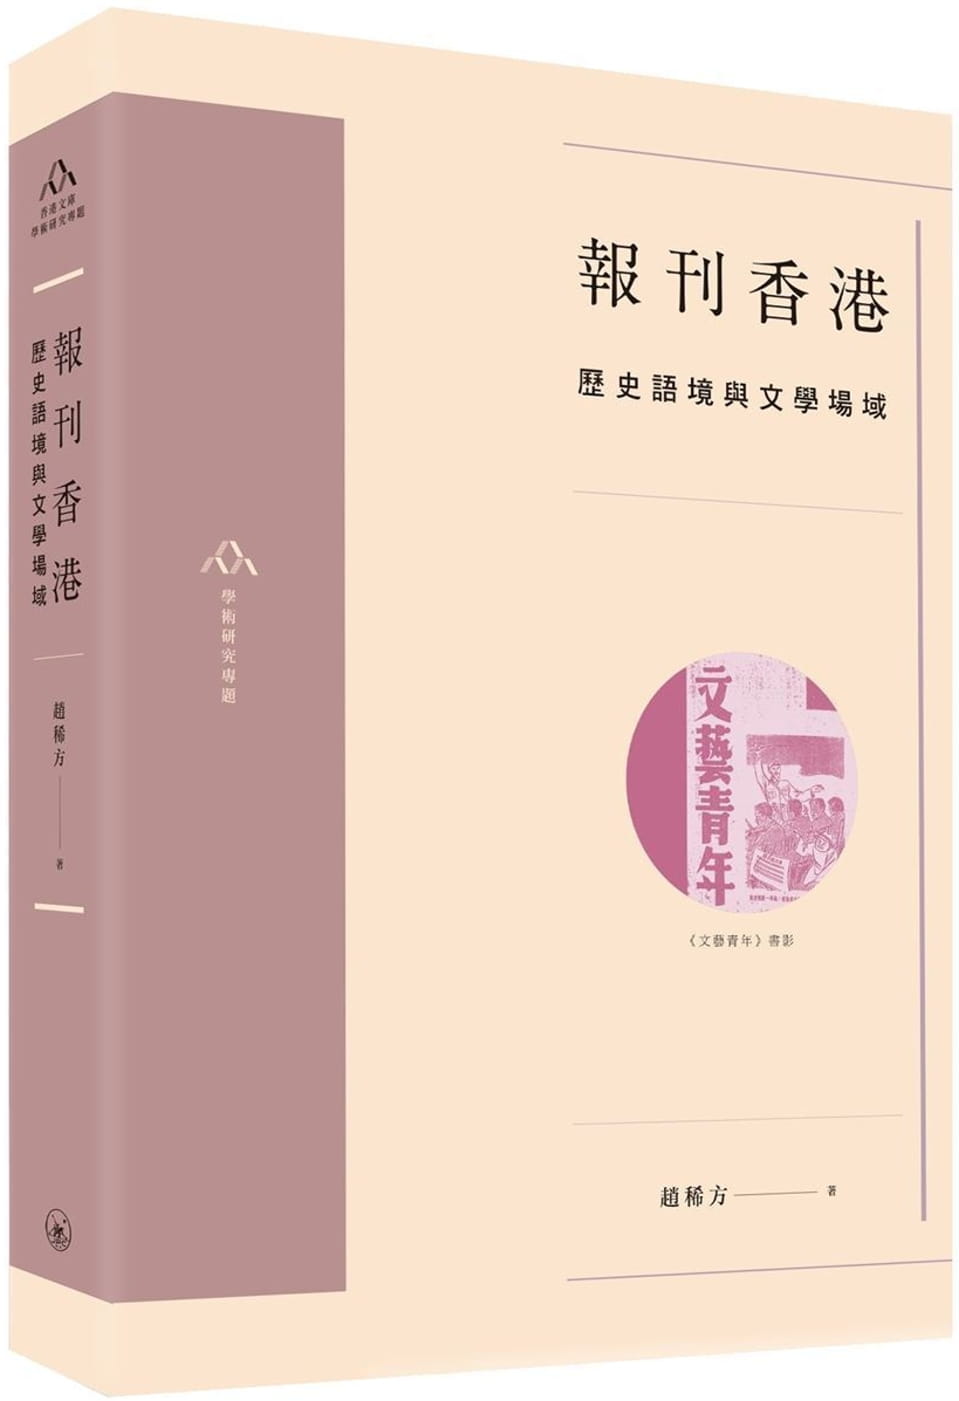 報刊香港：歷史語境與文學場域